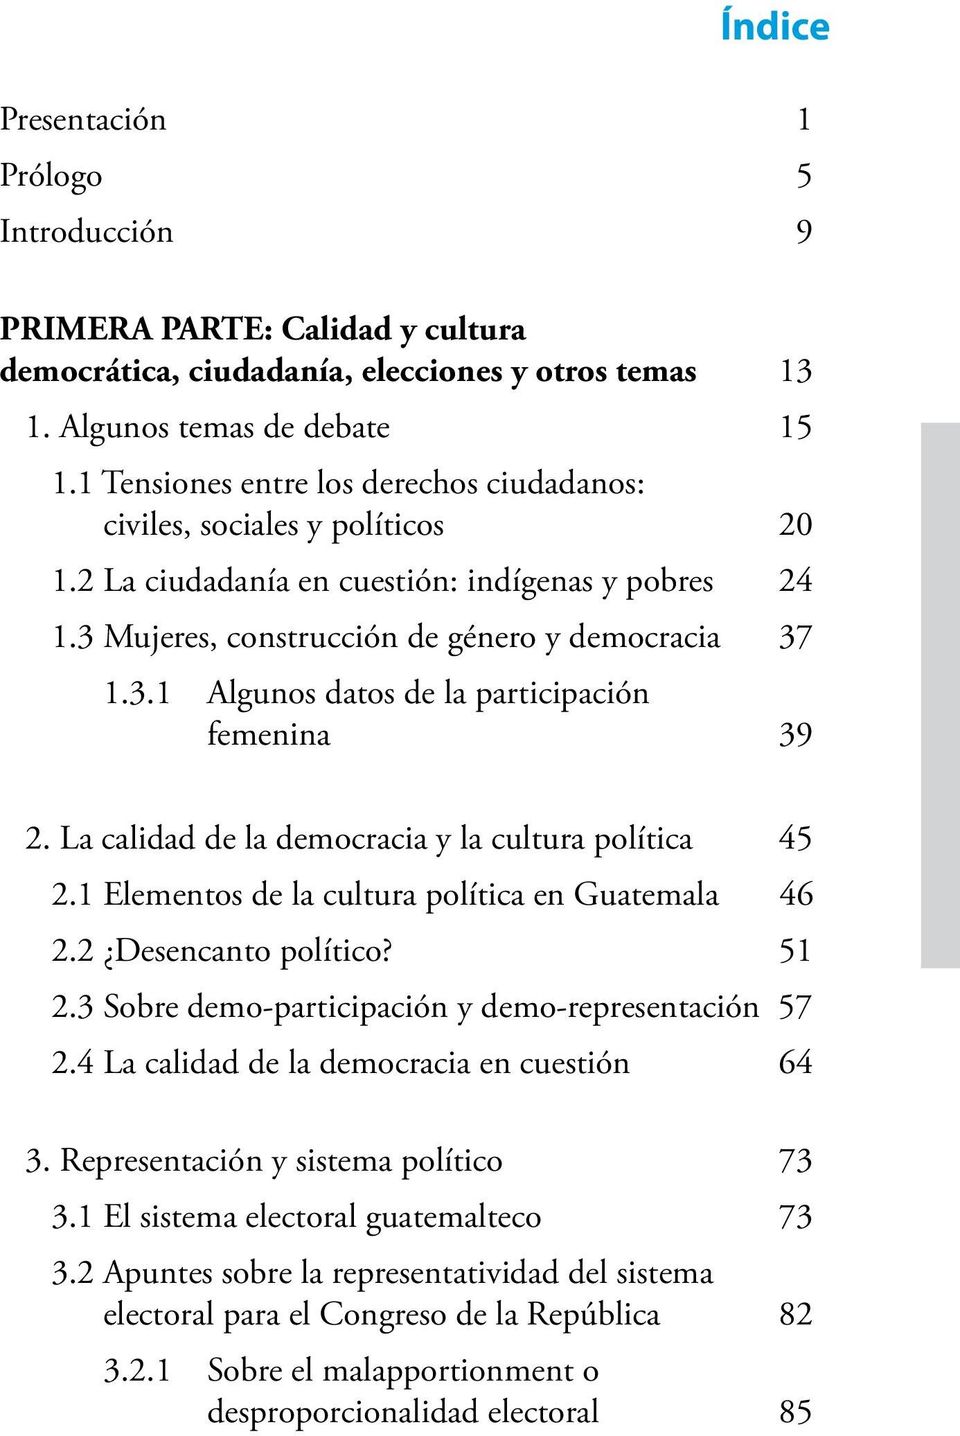 La calidad de la democracia y la cultura política 45 2.1 Elementos de la cultura política en Guatemala 46 2.2 Desencanto político? 51 2.3 Sobre demo-participación y demo-representación 57 2.